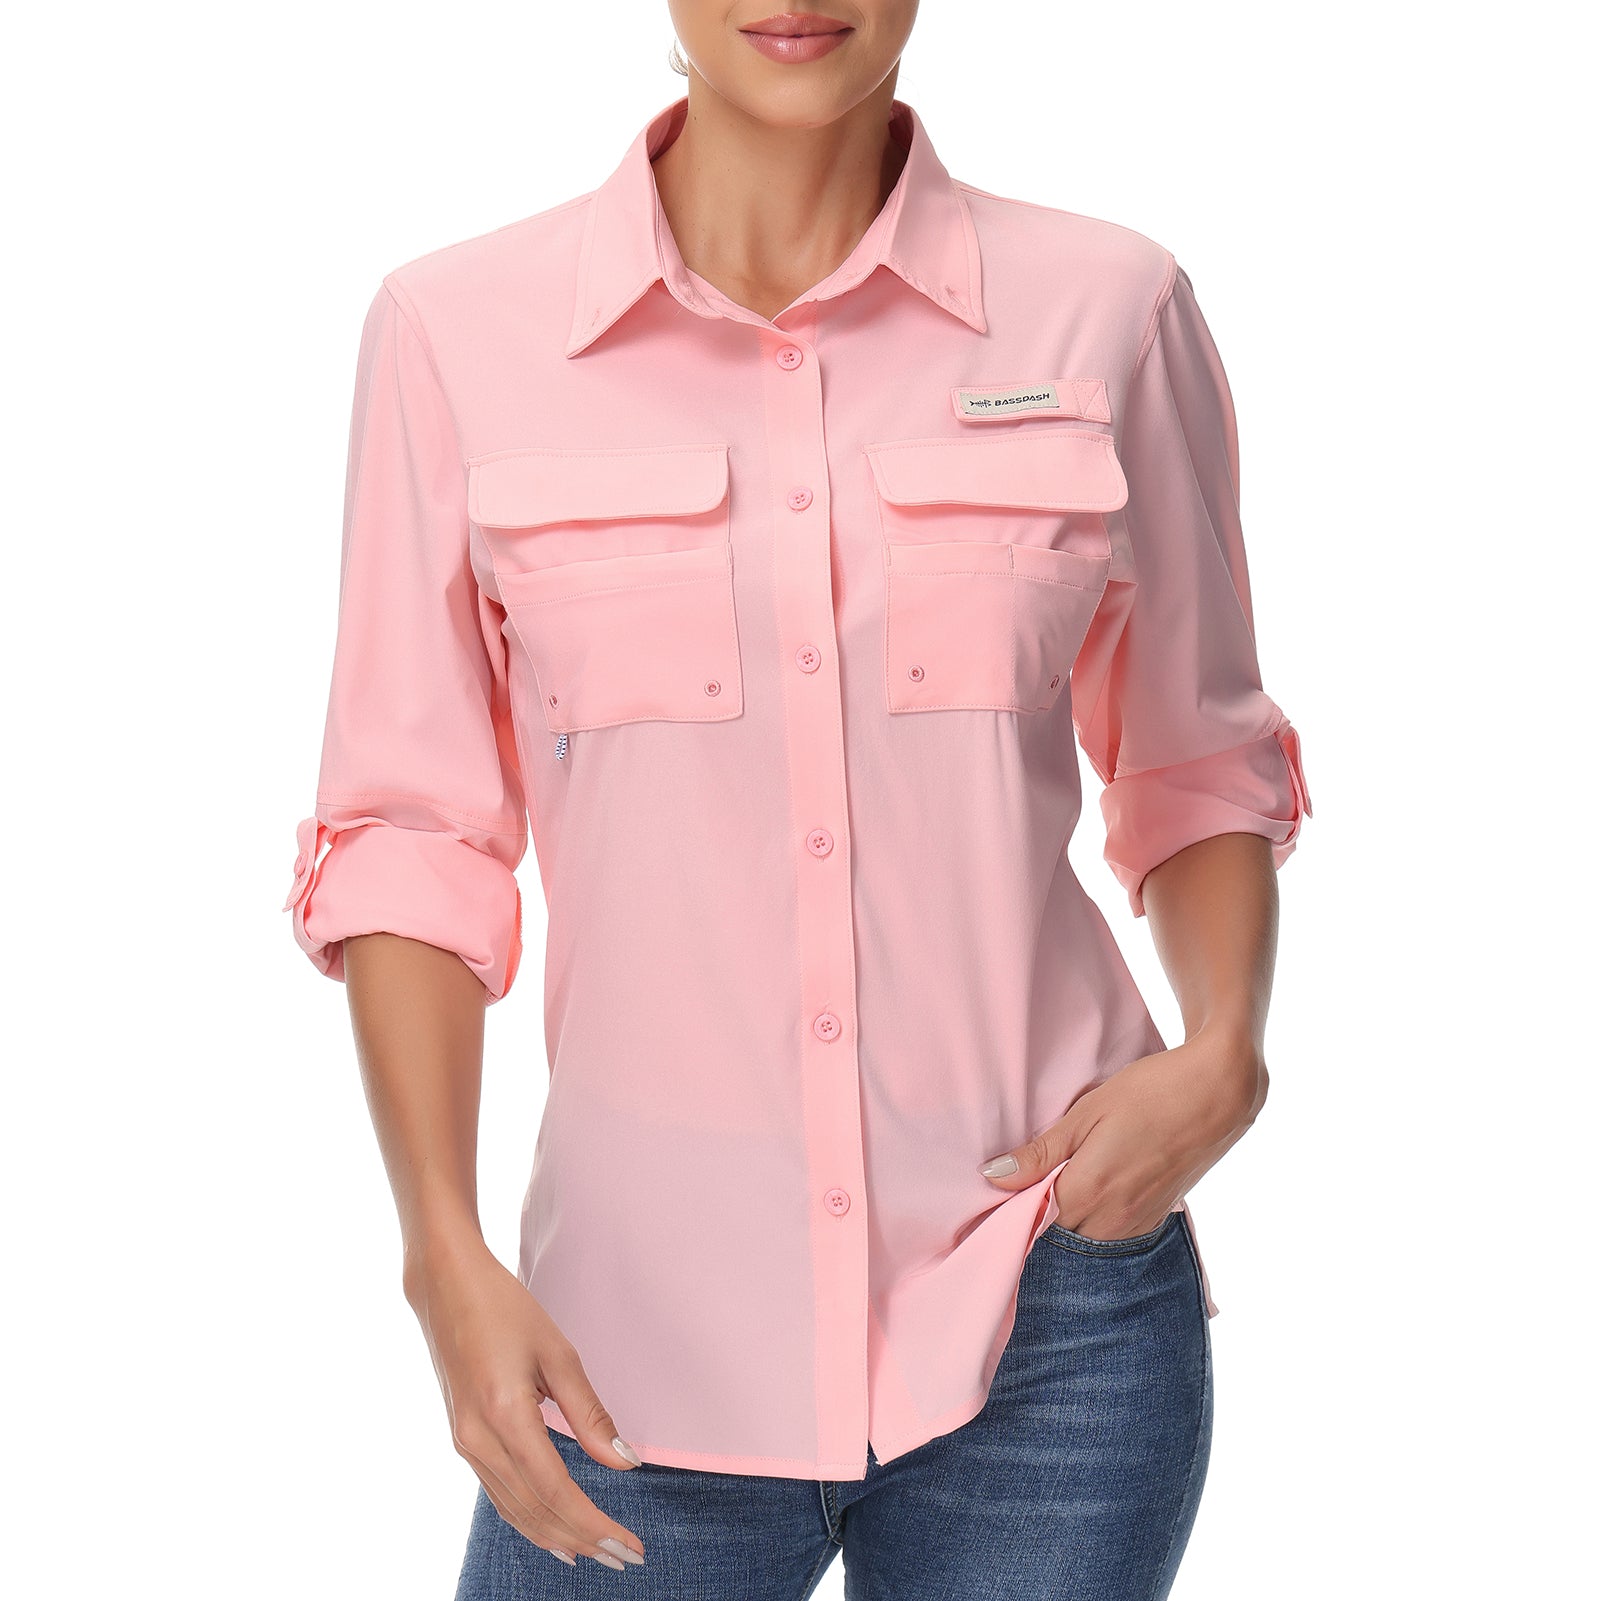 Women’s UPF 50+ Long Sleeve Fishing Shirts FS21W, Pink / 3X-Large